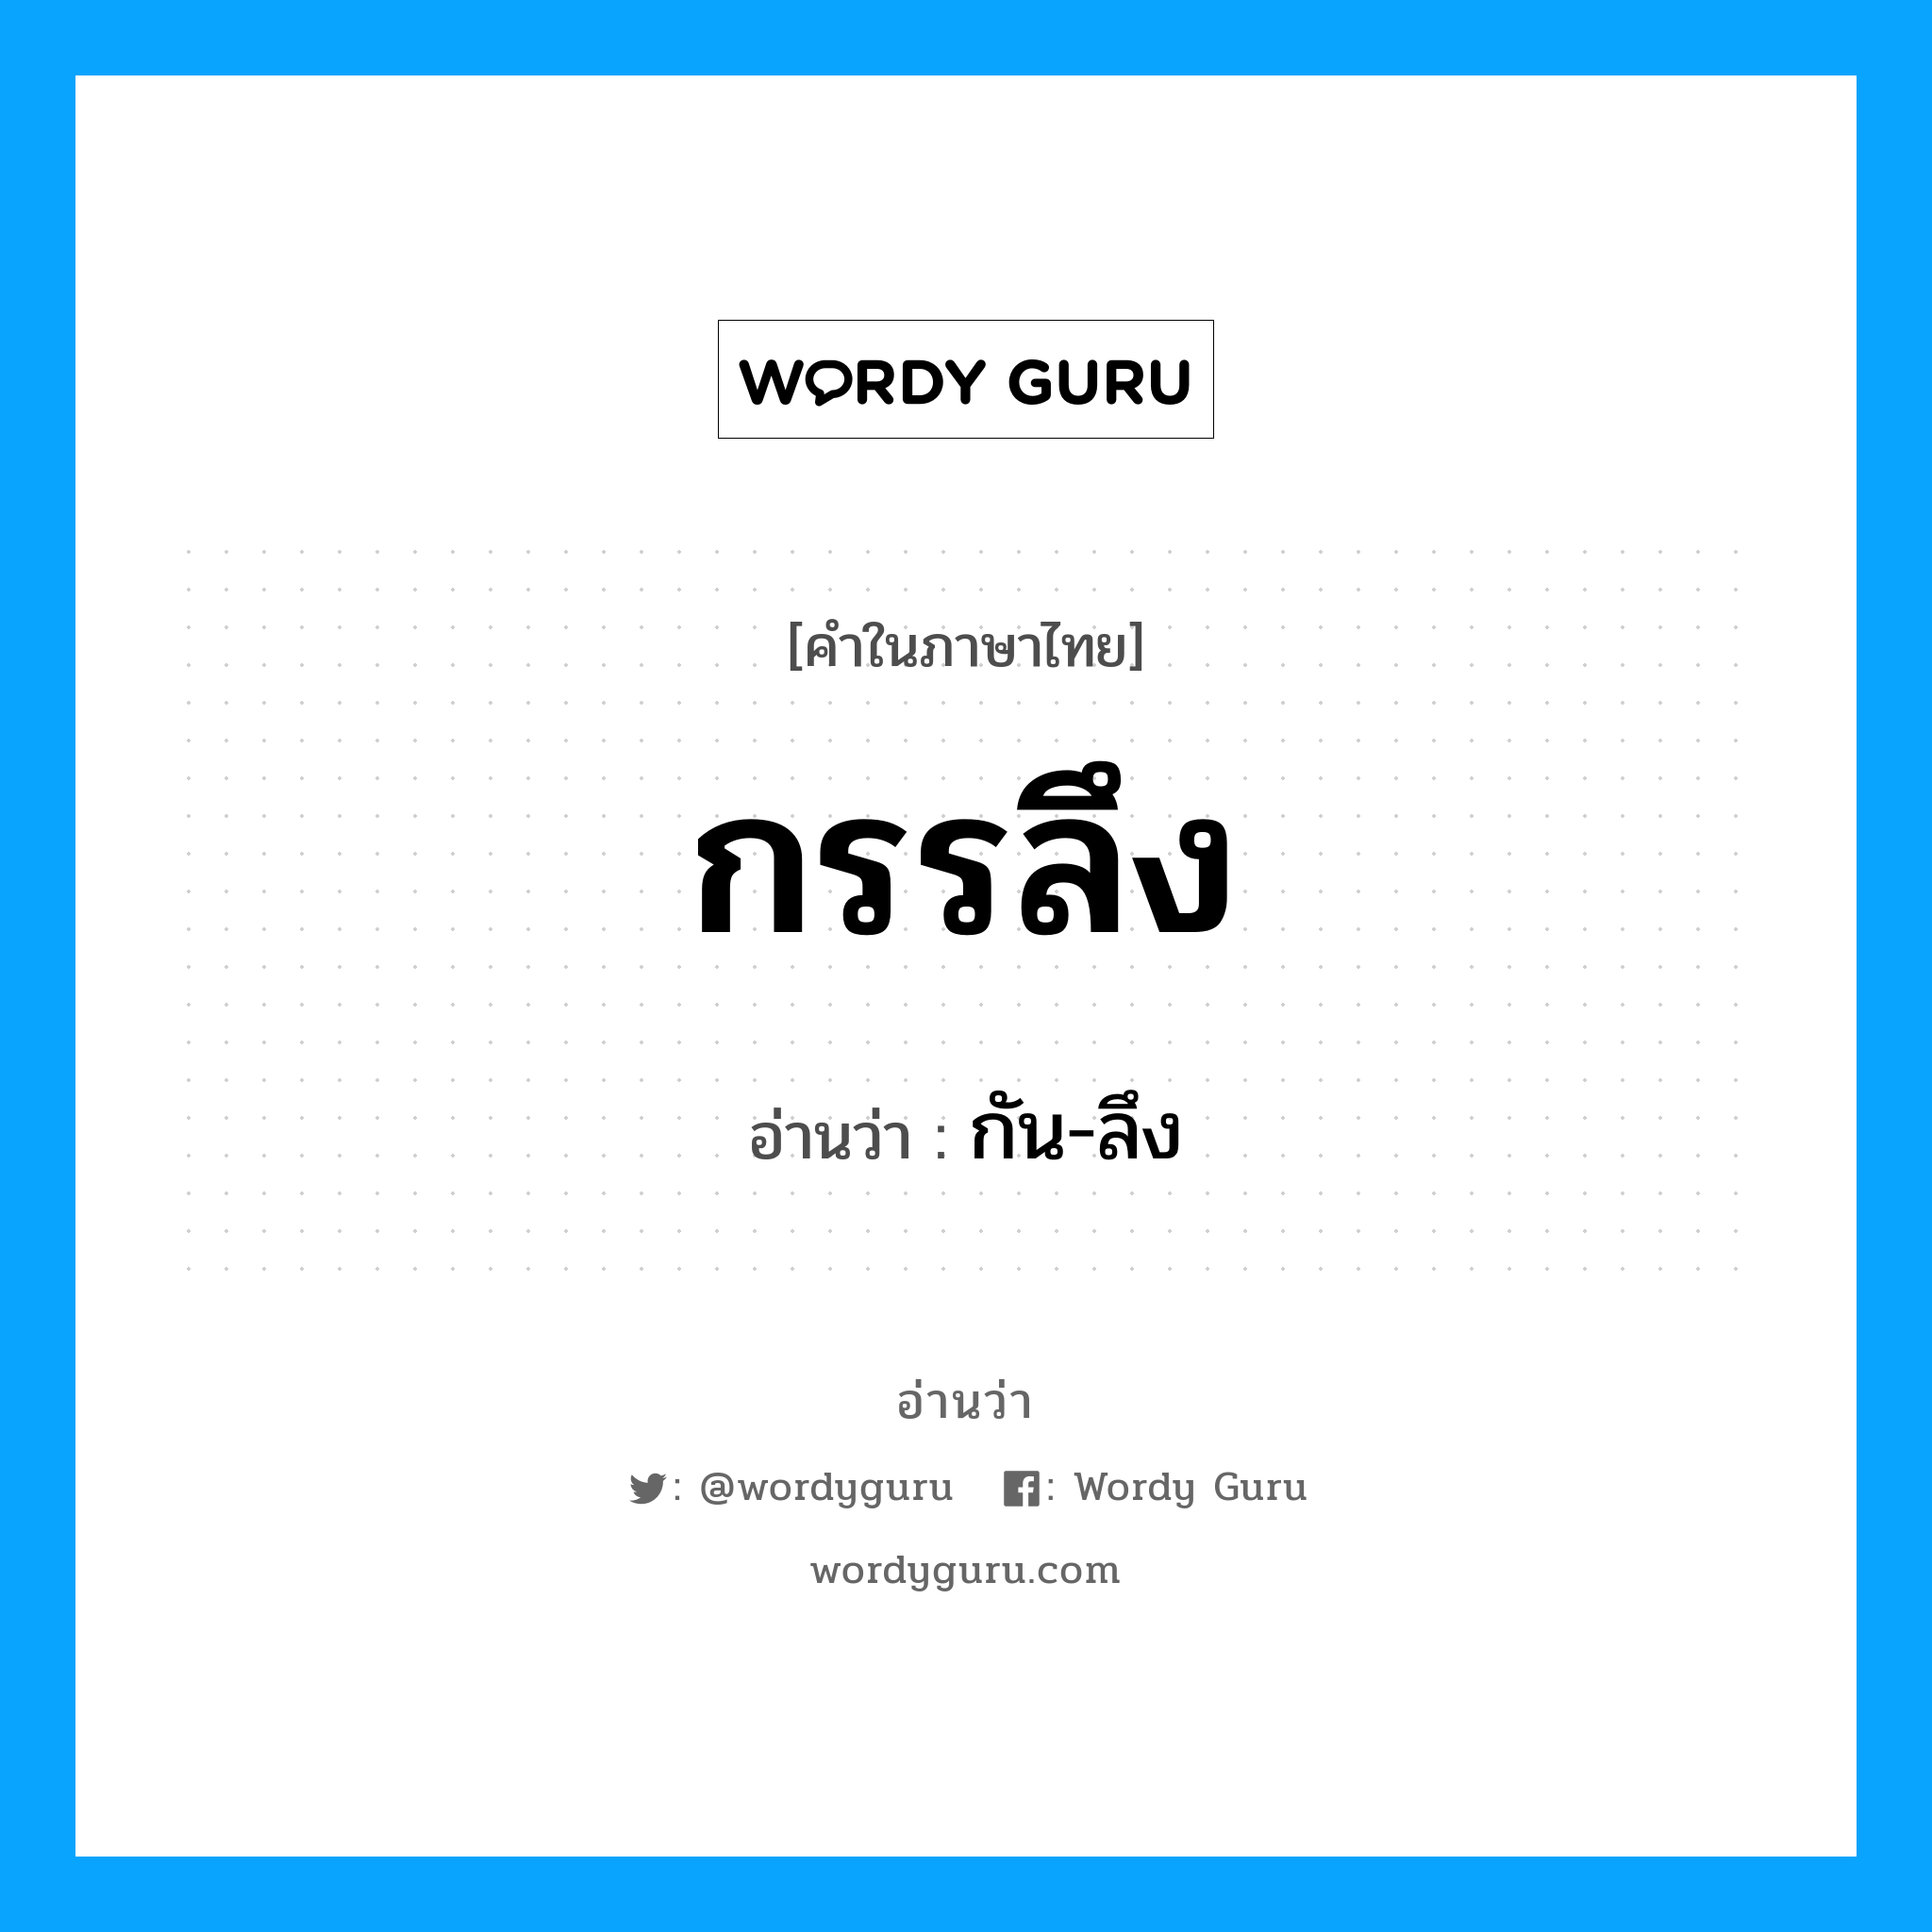 กัน-ลึง เป็นคำอ่านของคำไหน?, คำในภาษาไทย กัน-ลึง อ่านว่า กรรลึง